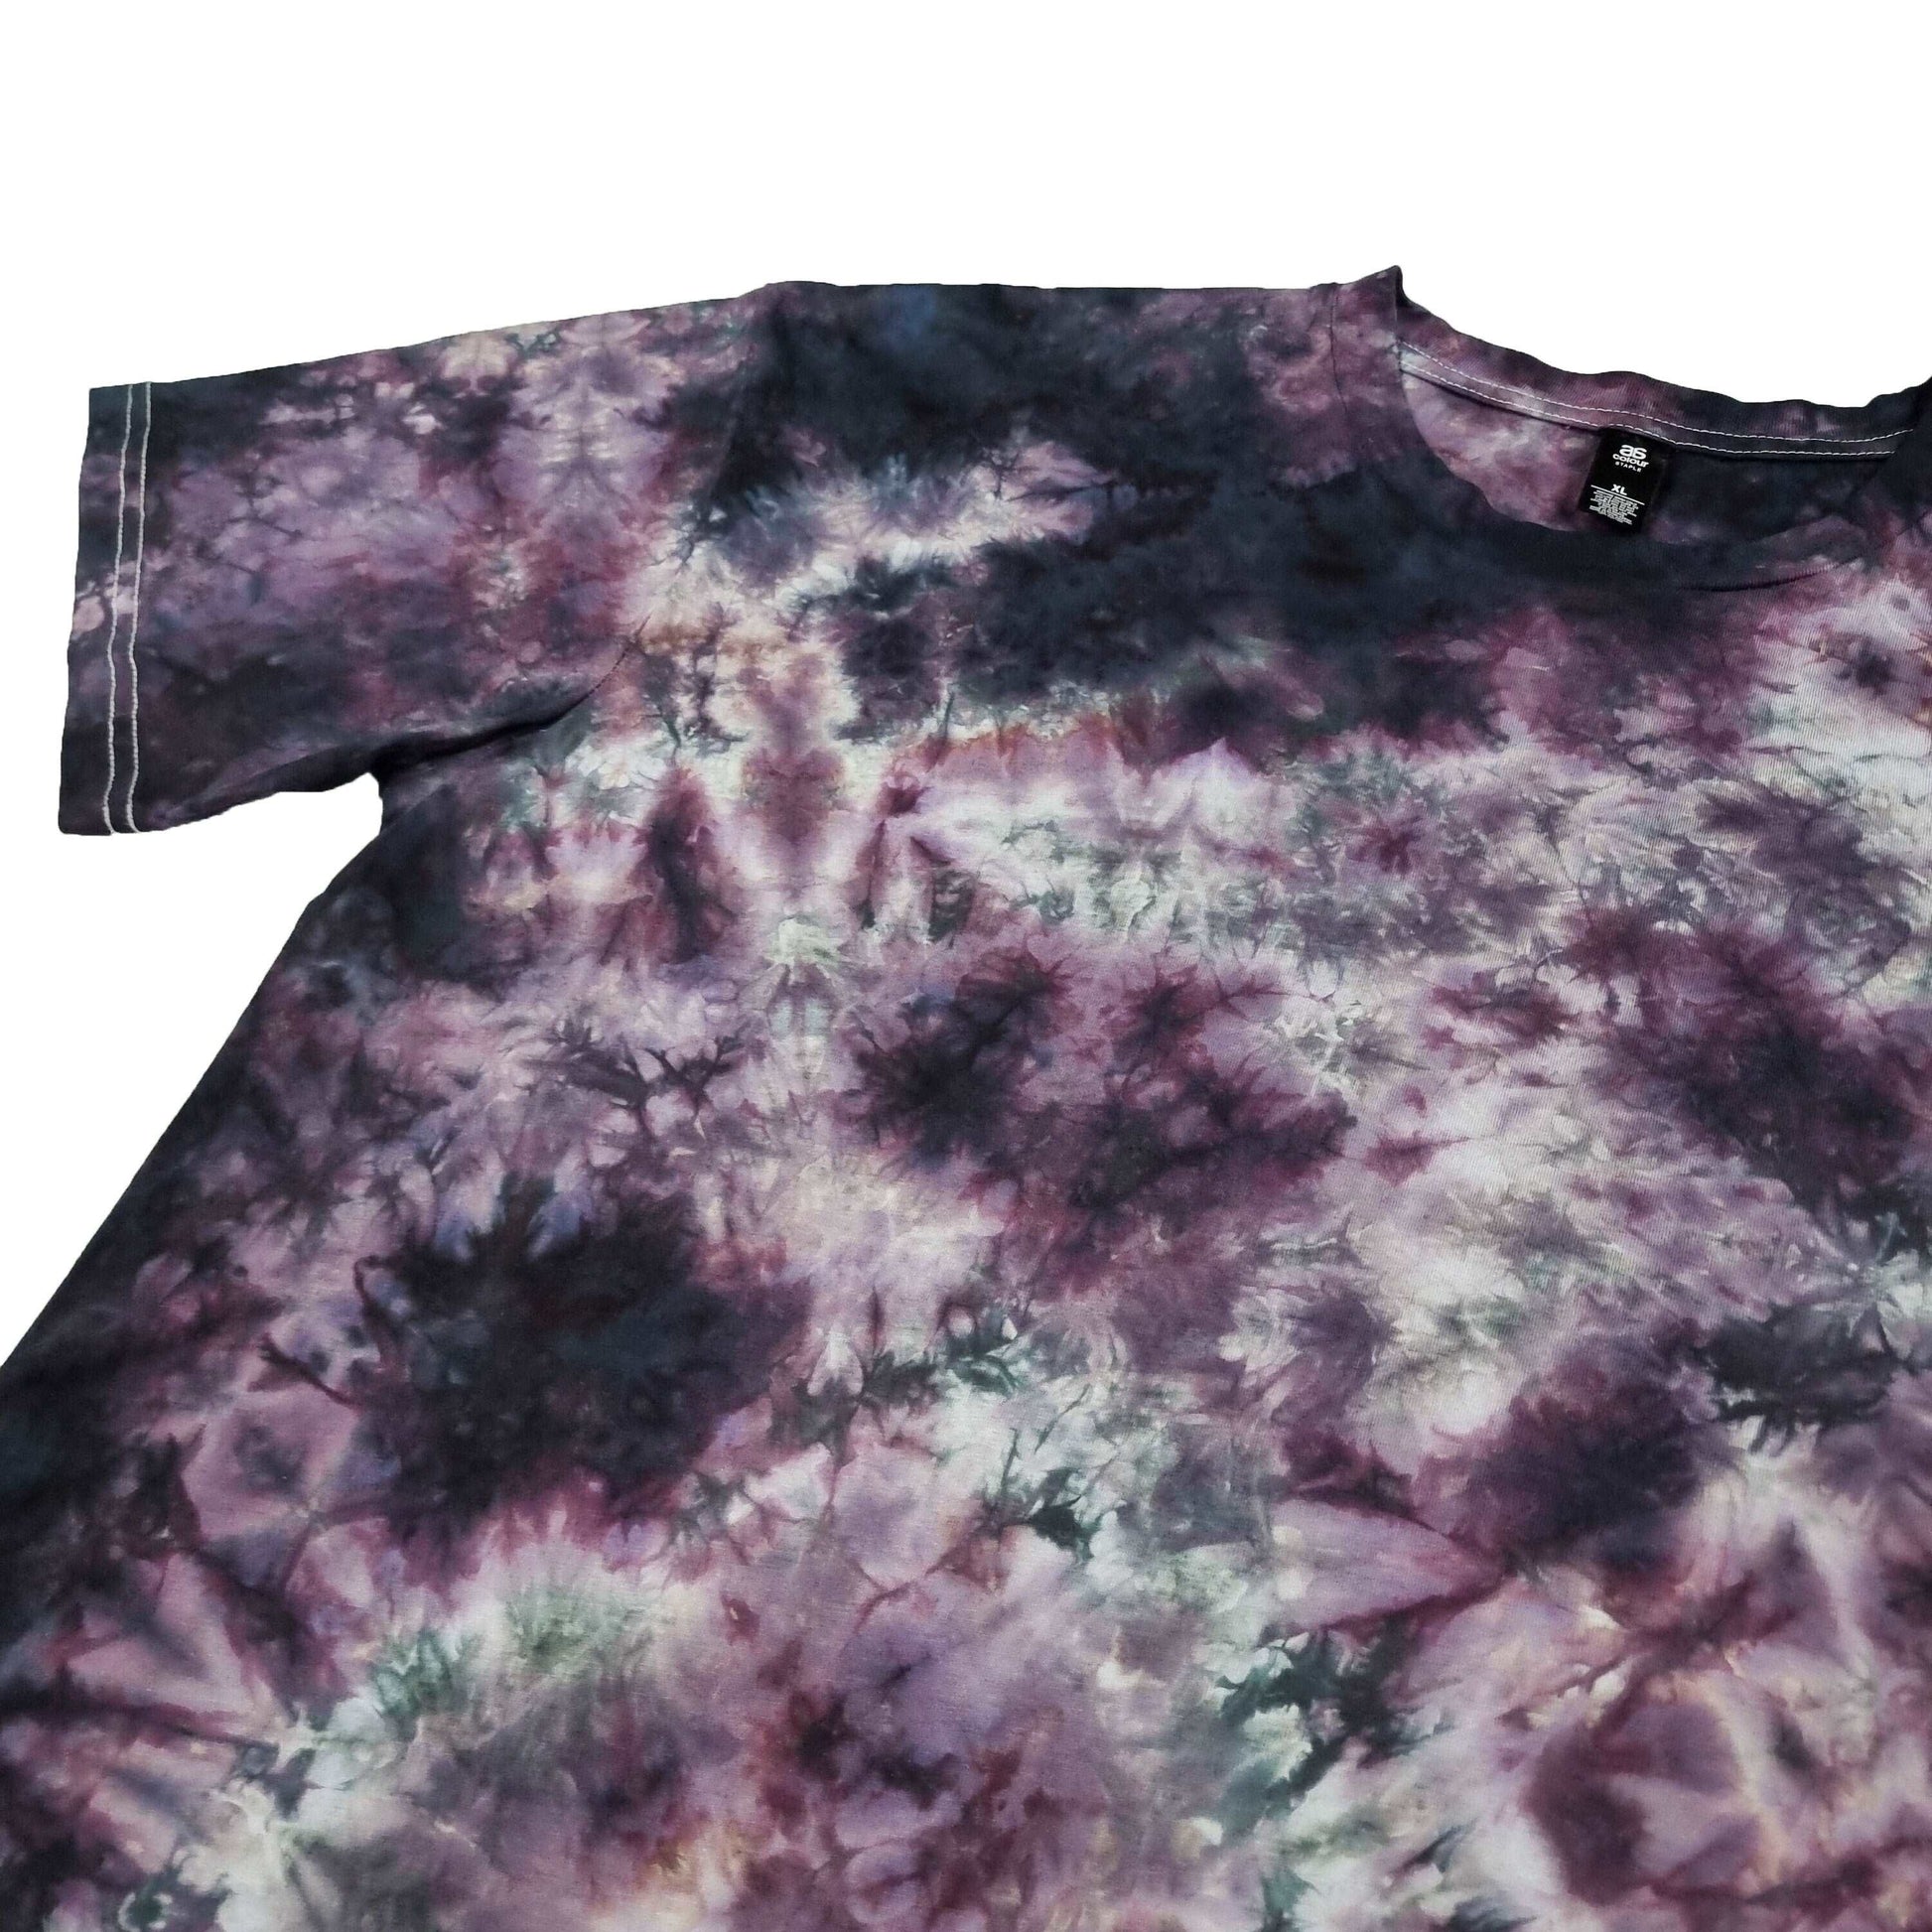 Smoky Purple Camo Crunch Tie Dye T-Shirt